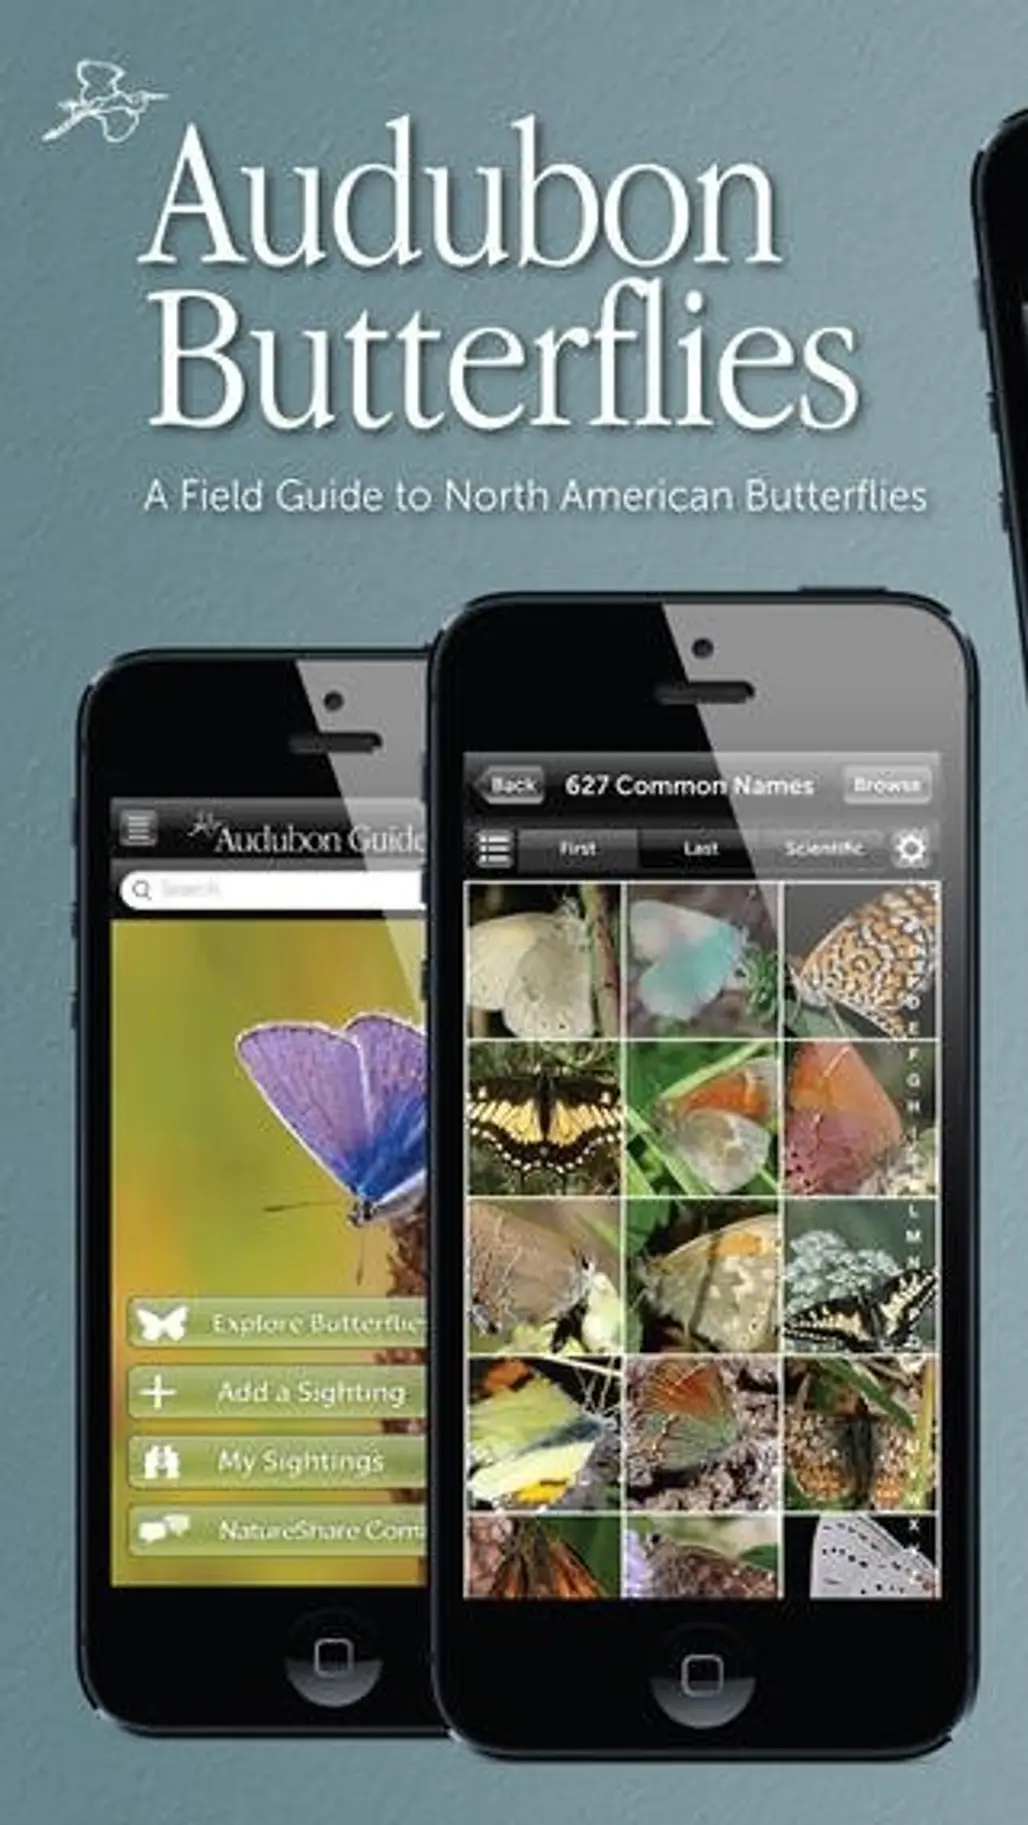 Audubon Butterflies - a Field Guide to North American Butterflies